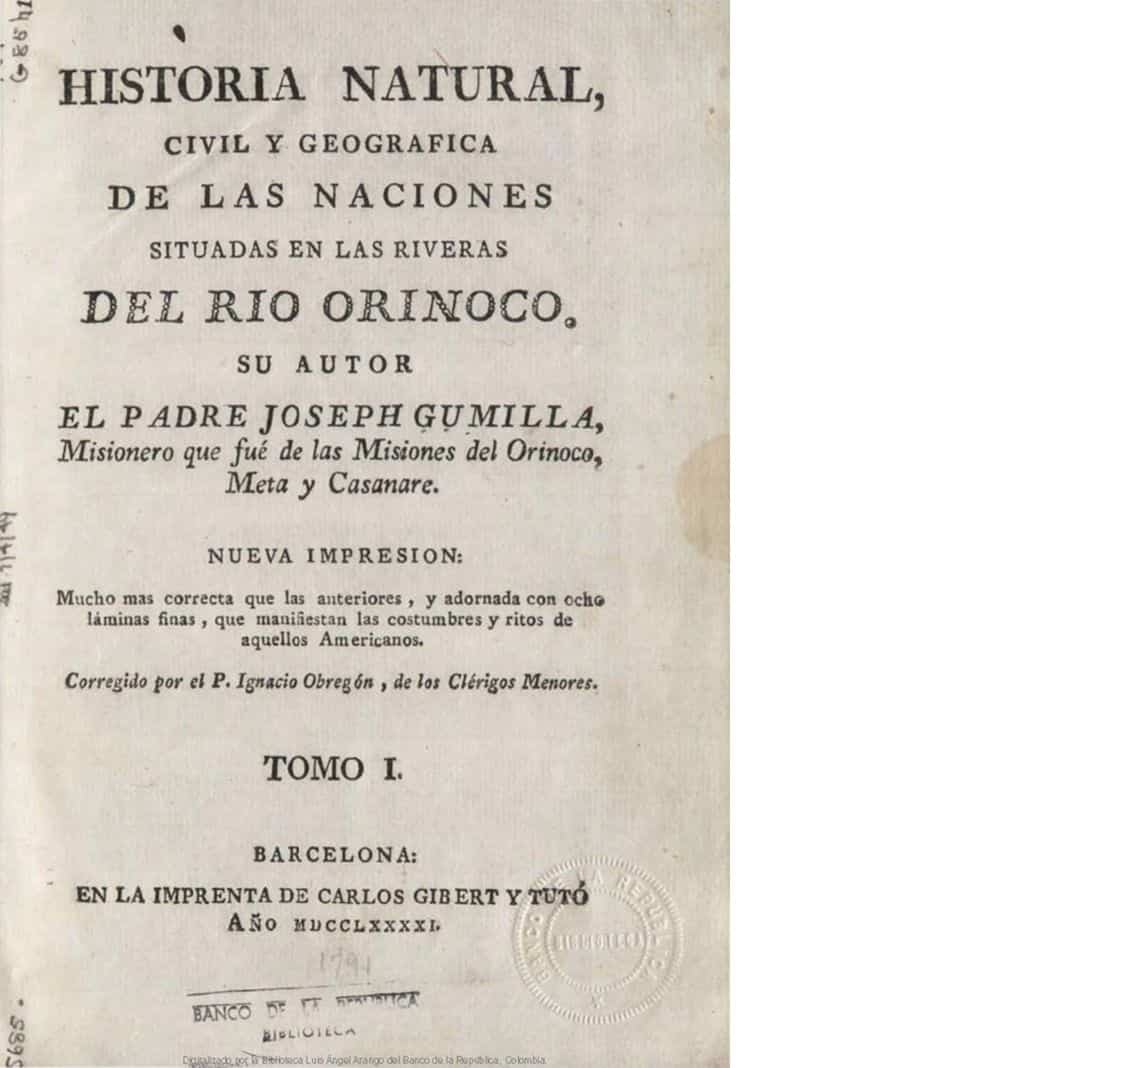 Historia natural, civil y geográfica de las naciones situadas en las riveras del Río Orinoco. Tomo I